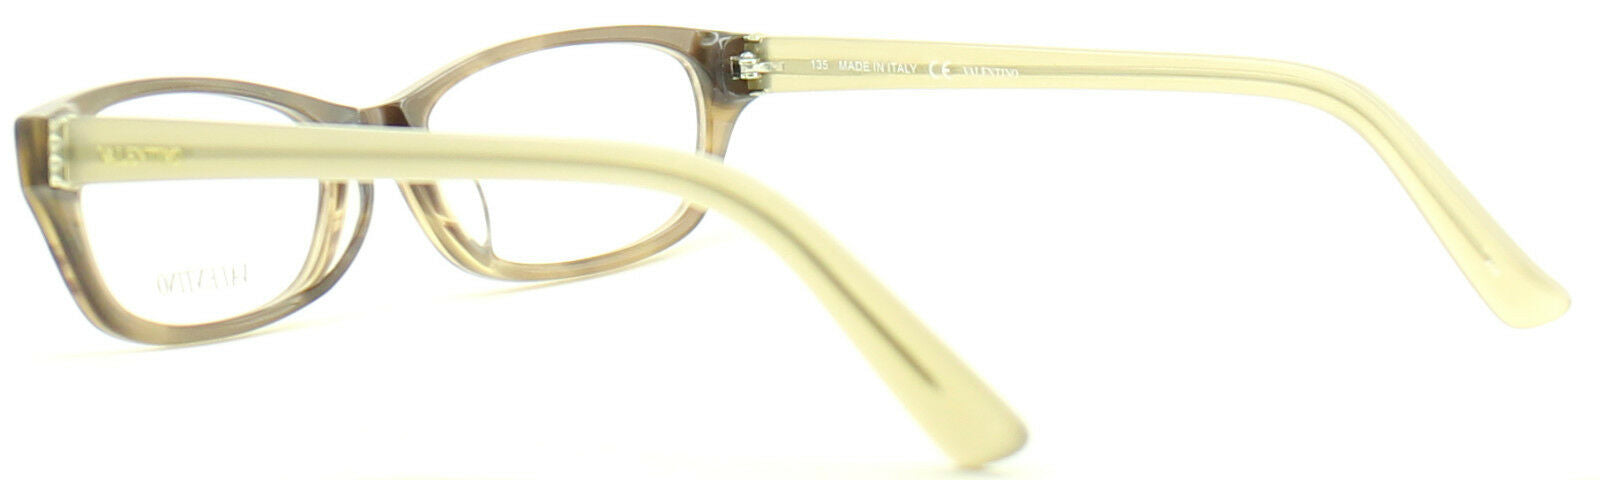 VALENTINO V2618 236 Eyewear FRAMES RX Optical Eyeglasses Glasses Italy New -BNIB